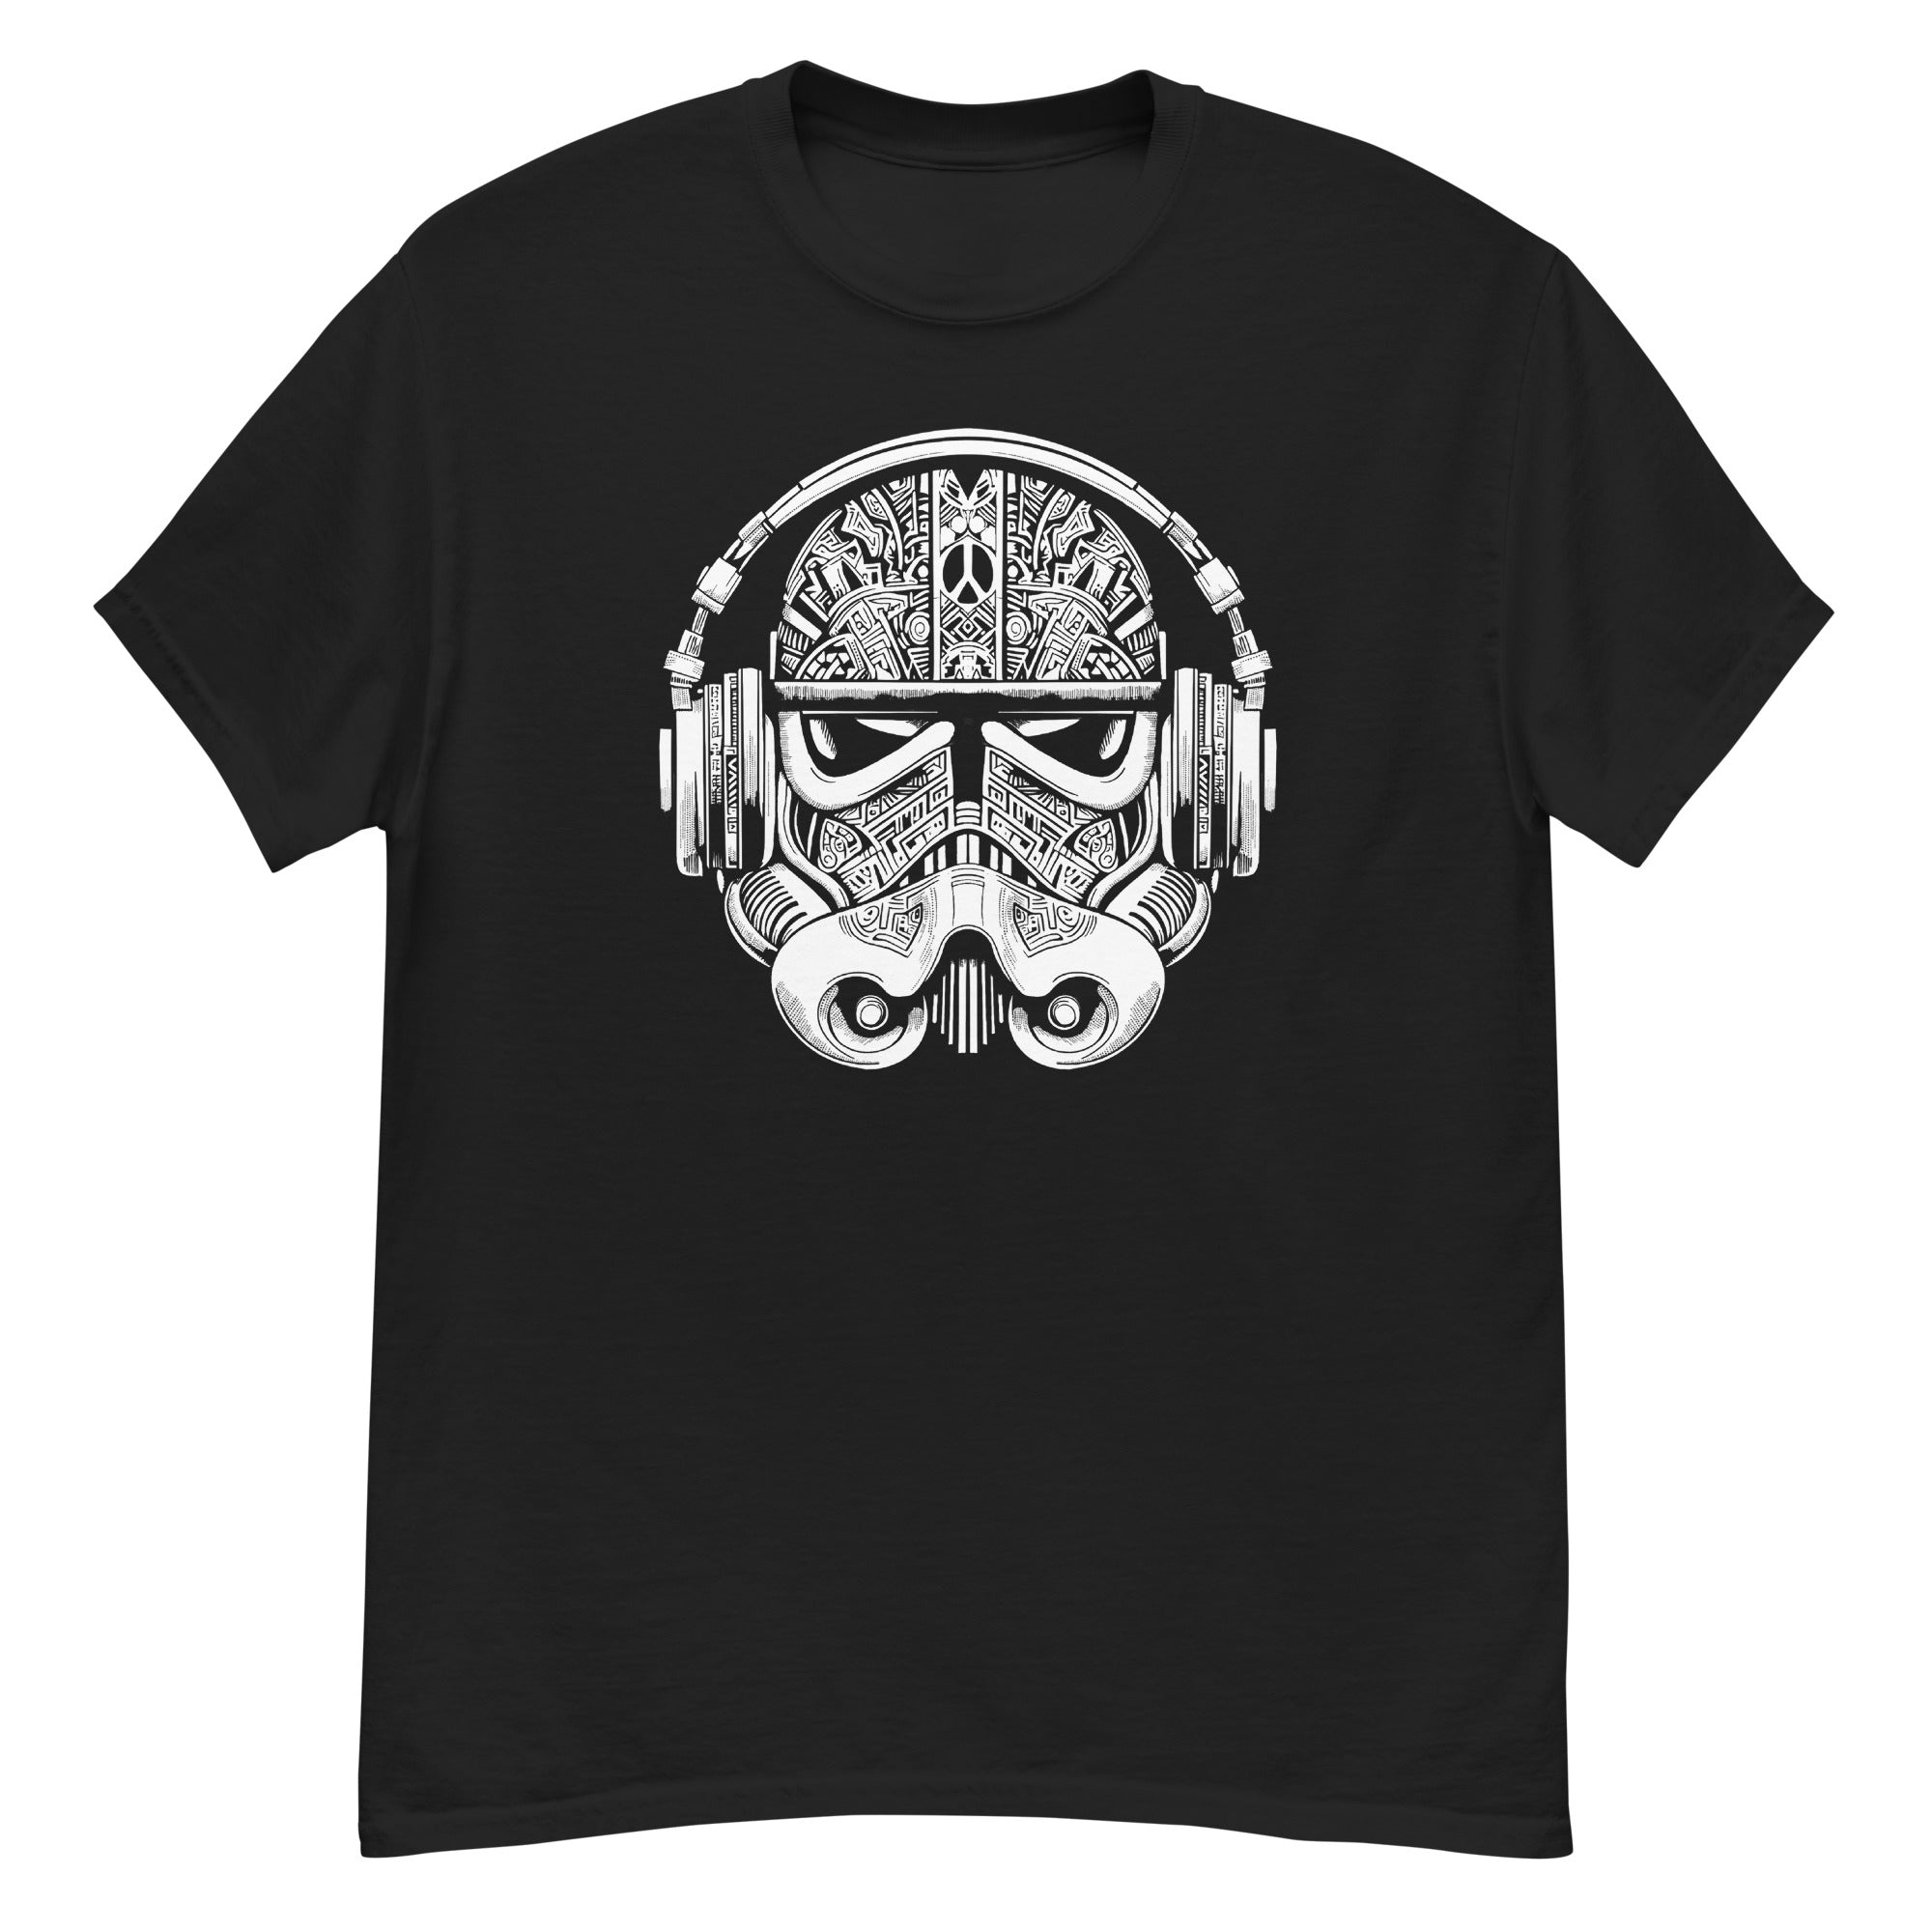 DJ TROOPER Men's T-Shirt - Beats 4 Hope